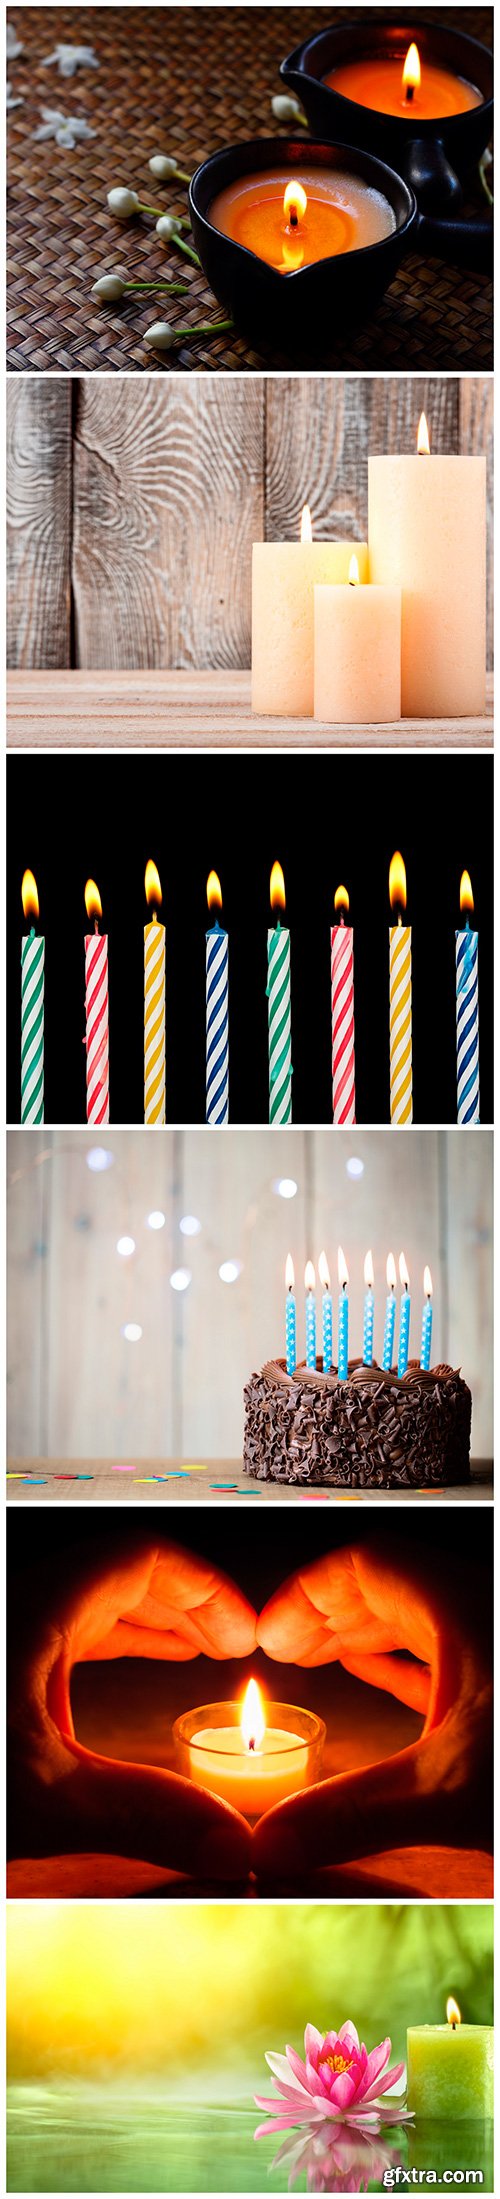 Set of candles - 6UHQ JPEG